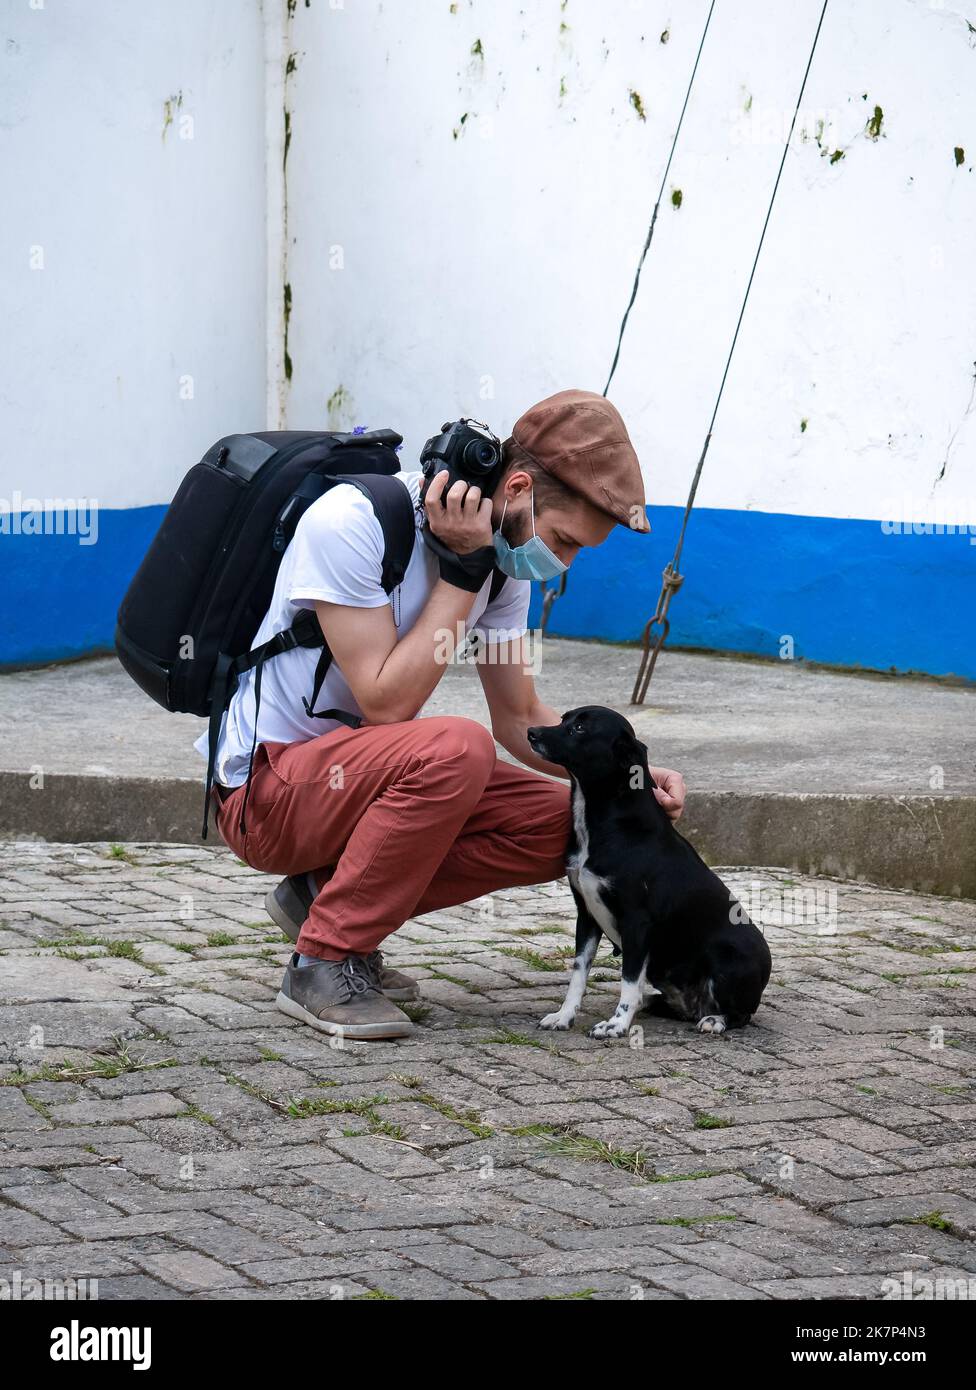 Un hombre blanco se alimenta de un perro blanco y negro en la calle Foto de stock